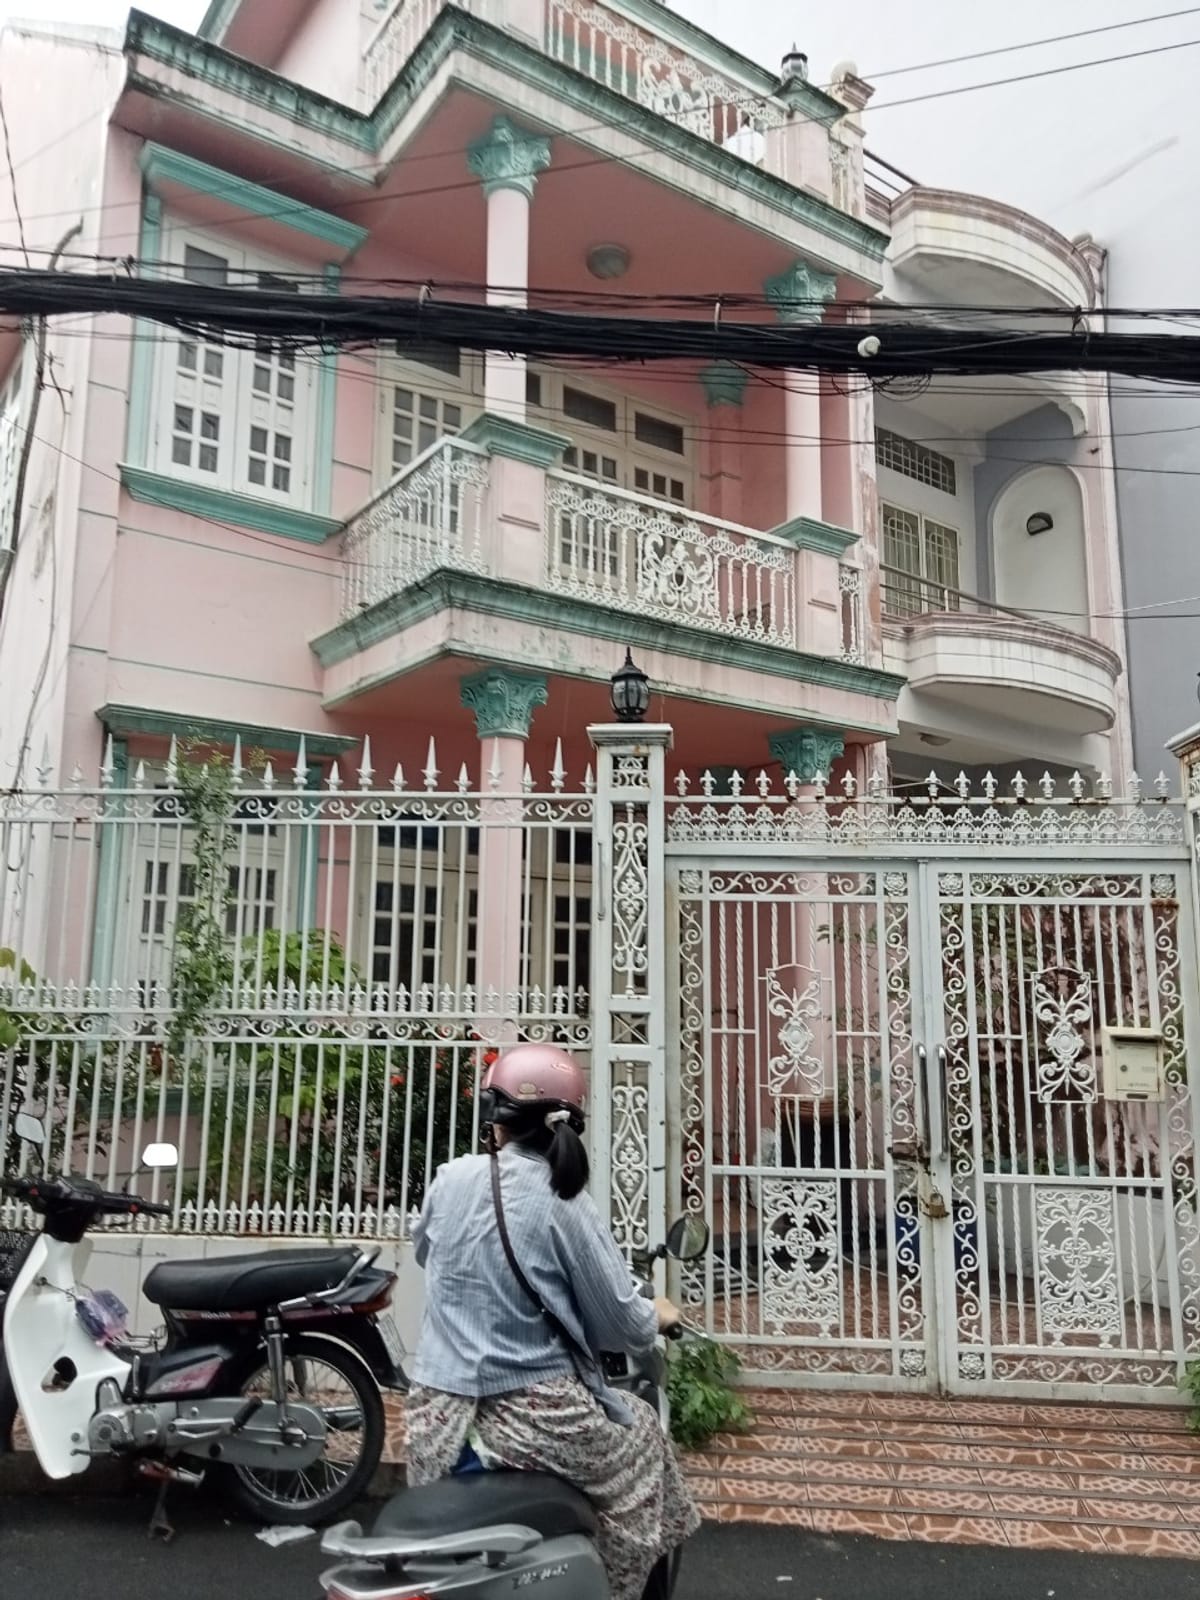 Chính chủ bán nhà gần ngã 6 Gò Vấp, phường 10, thông được 2 đường Nguyễn Oanh và Gò Vấp